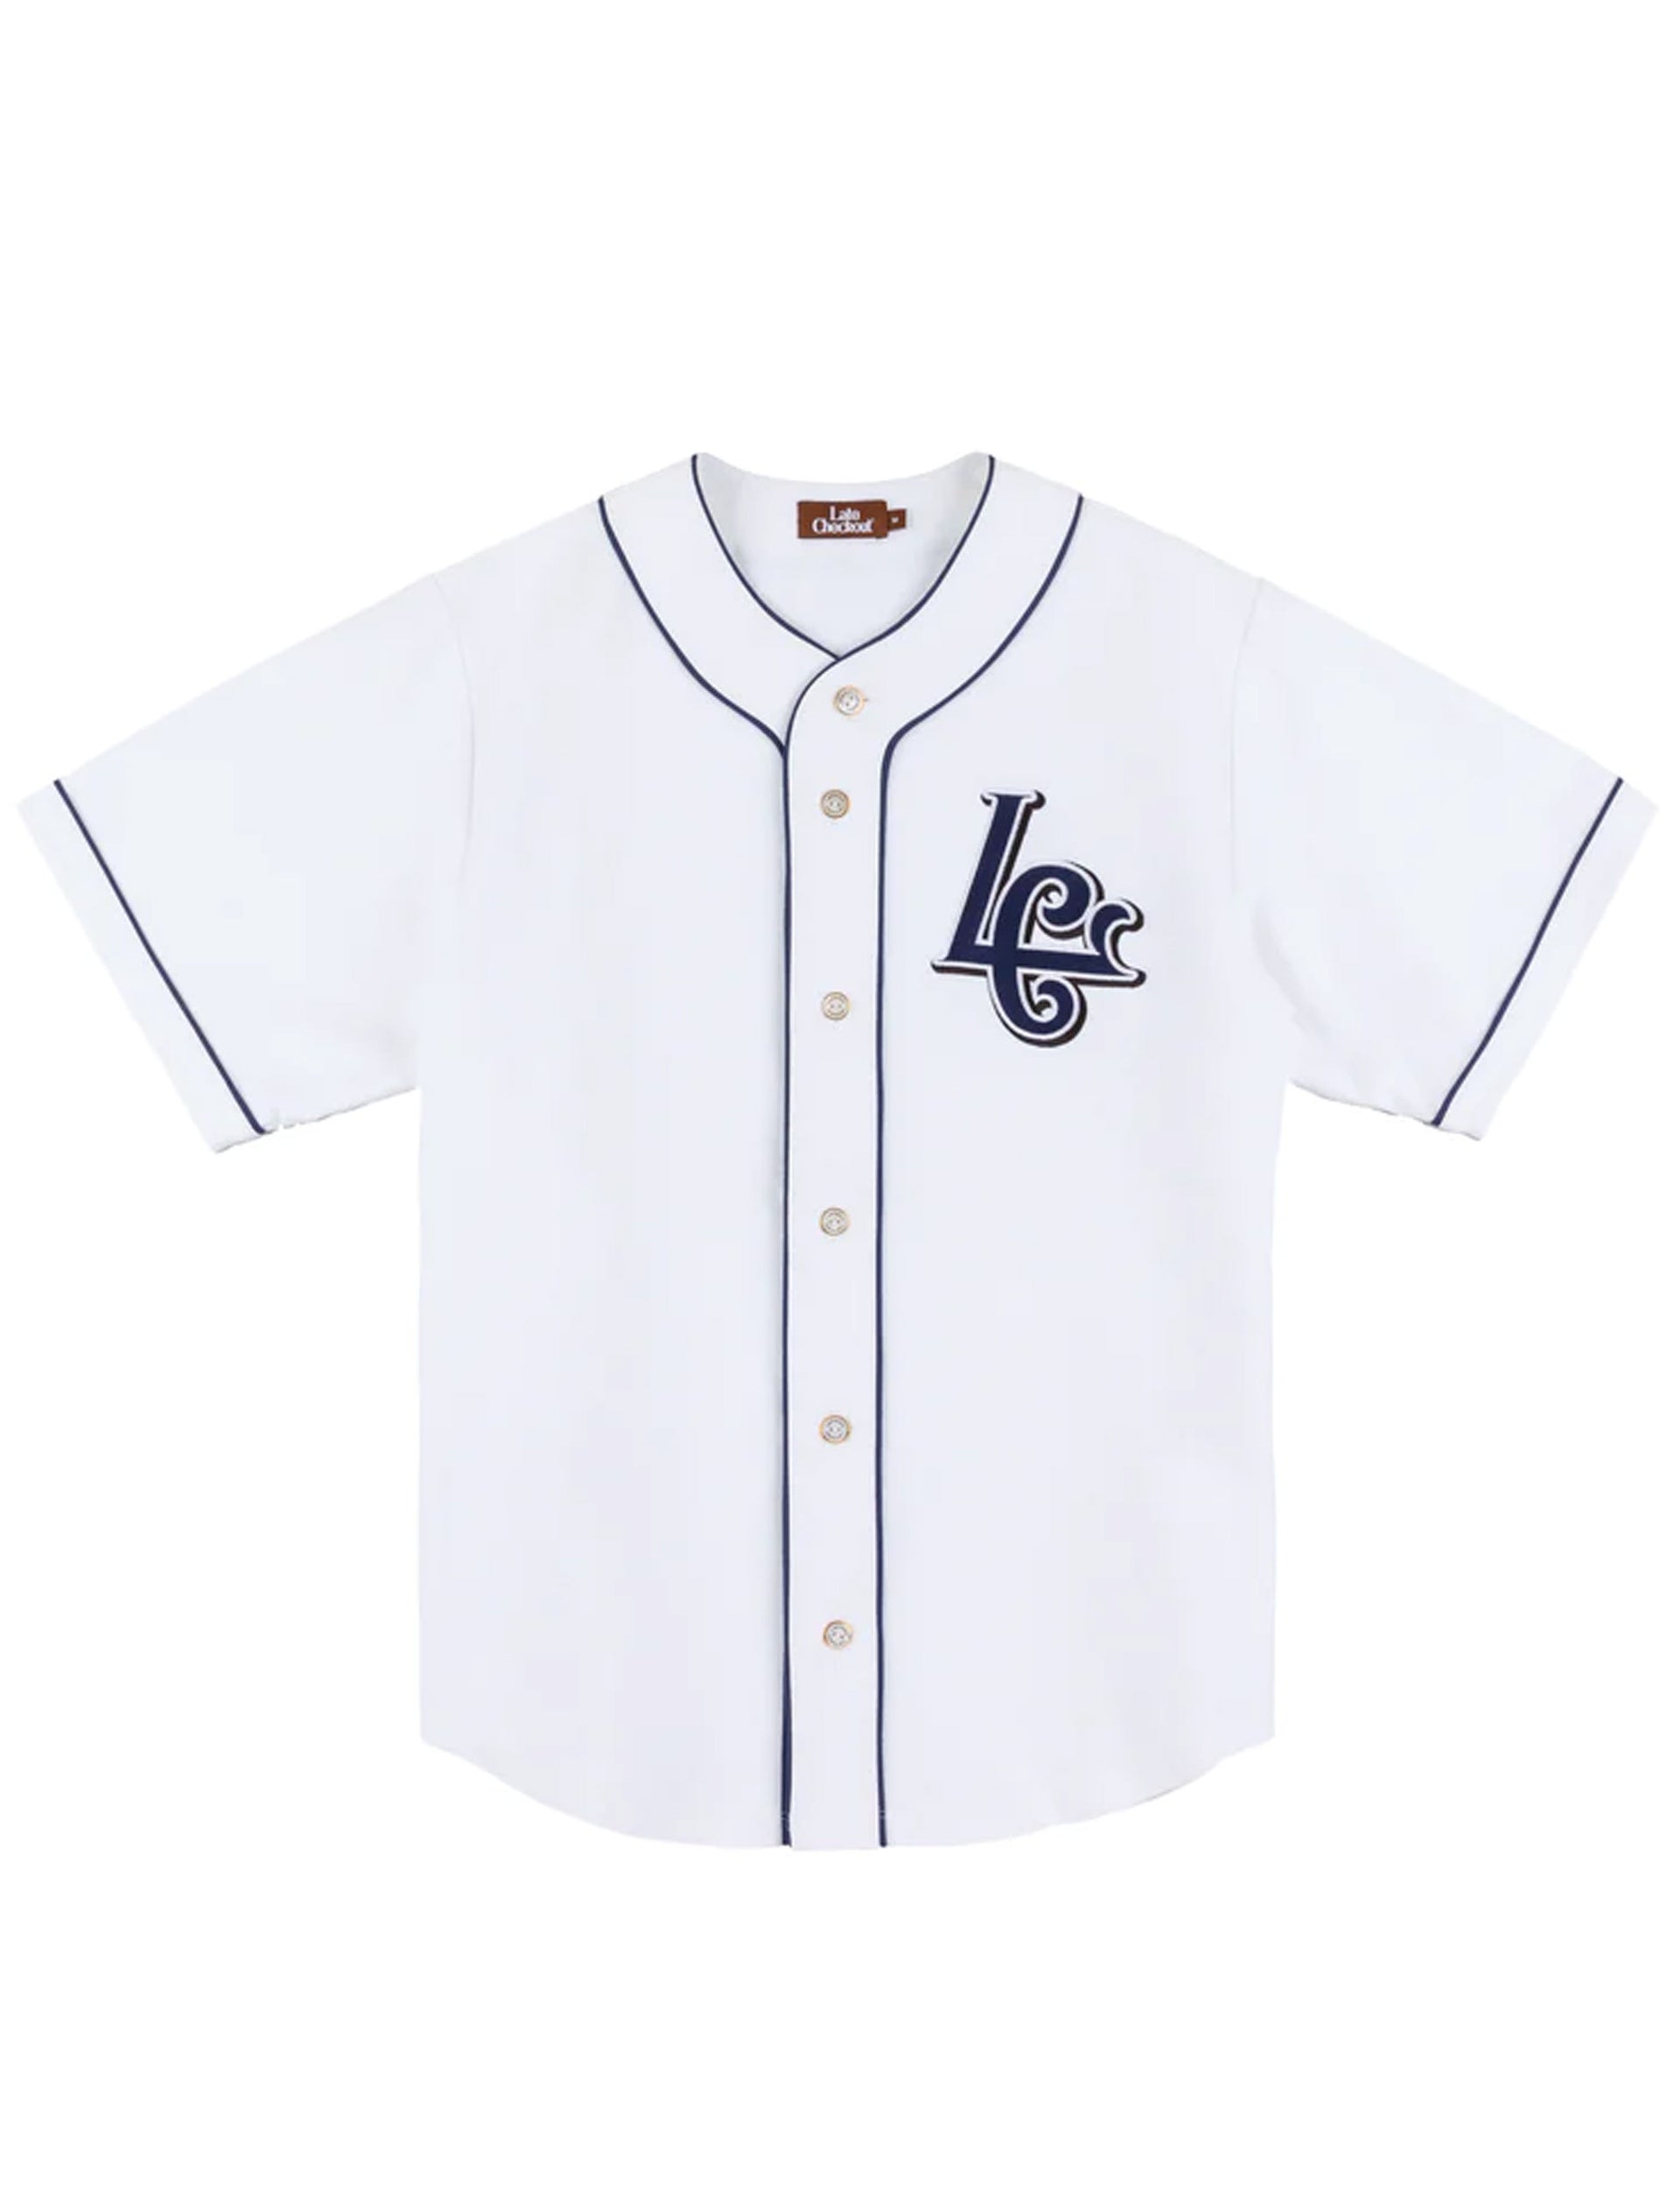 LATE CHECKOUT LC Baseball Shirt